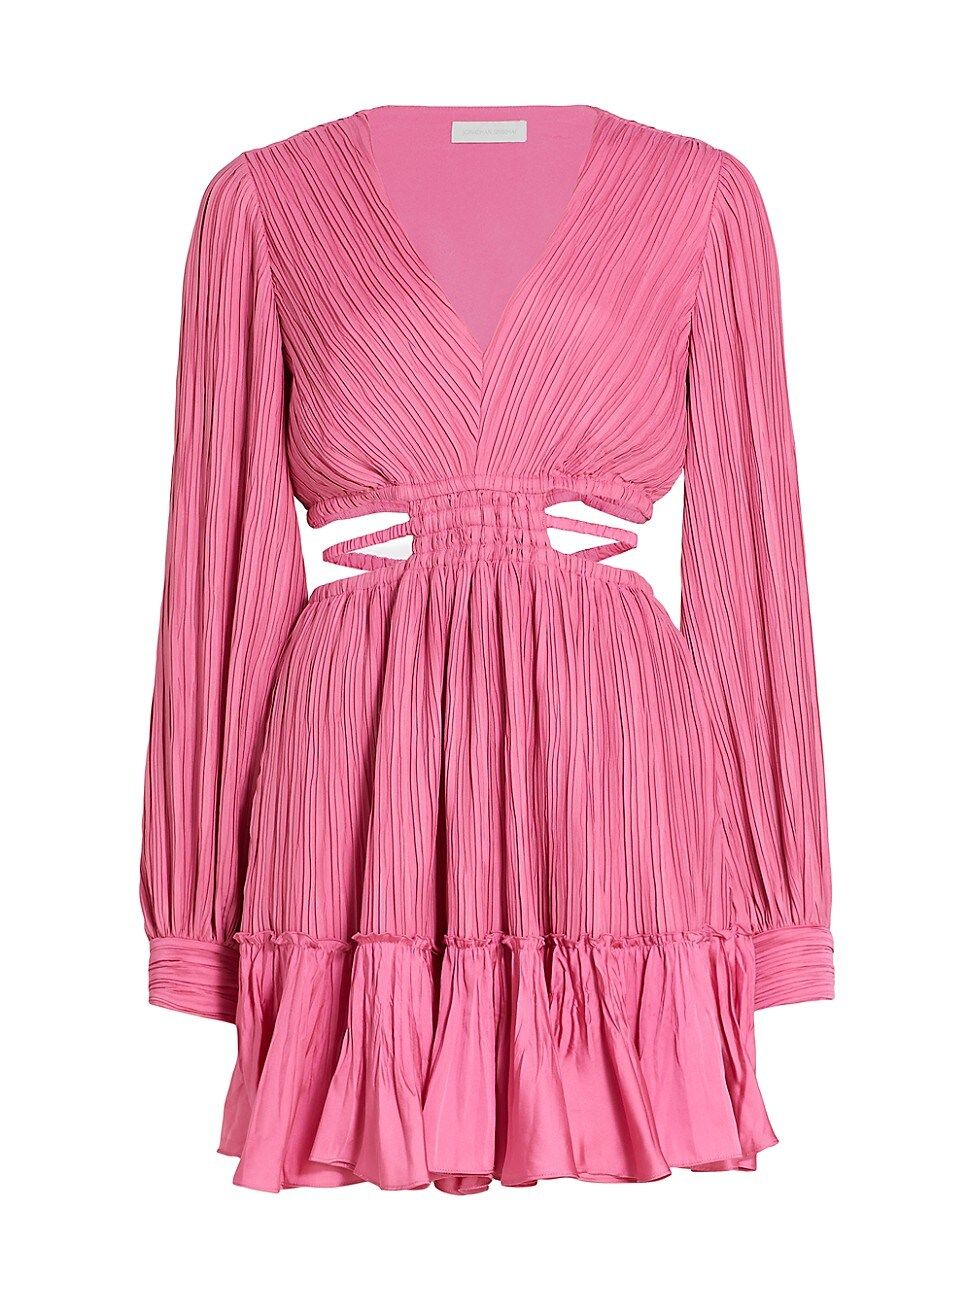 Women's Londyn Pleated Waist Cut-Out Minidress - Hot Pink - Size Medium - Hot Pink - Size Medium | Saks Fifth Avenue